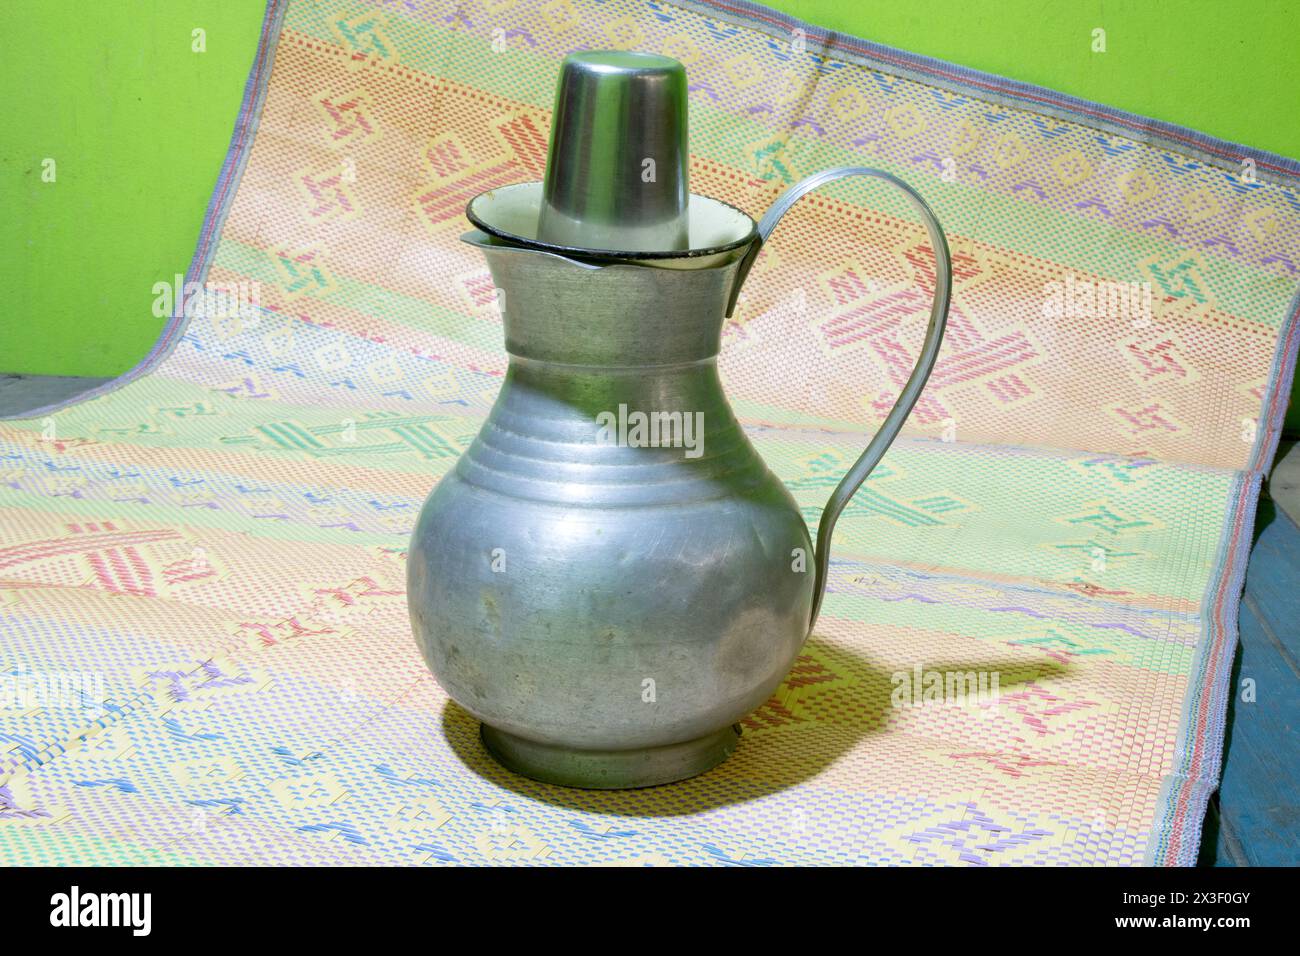 Ein Wasserjacken aus Aluminium mit einem Becher aus Edelstahl oder Glas auf einer Matte. Altmodischer Wassertopf mit Halter oder Handlauf. Häufig in Bangladesch verwendet. Stockfoto